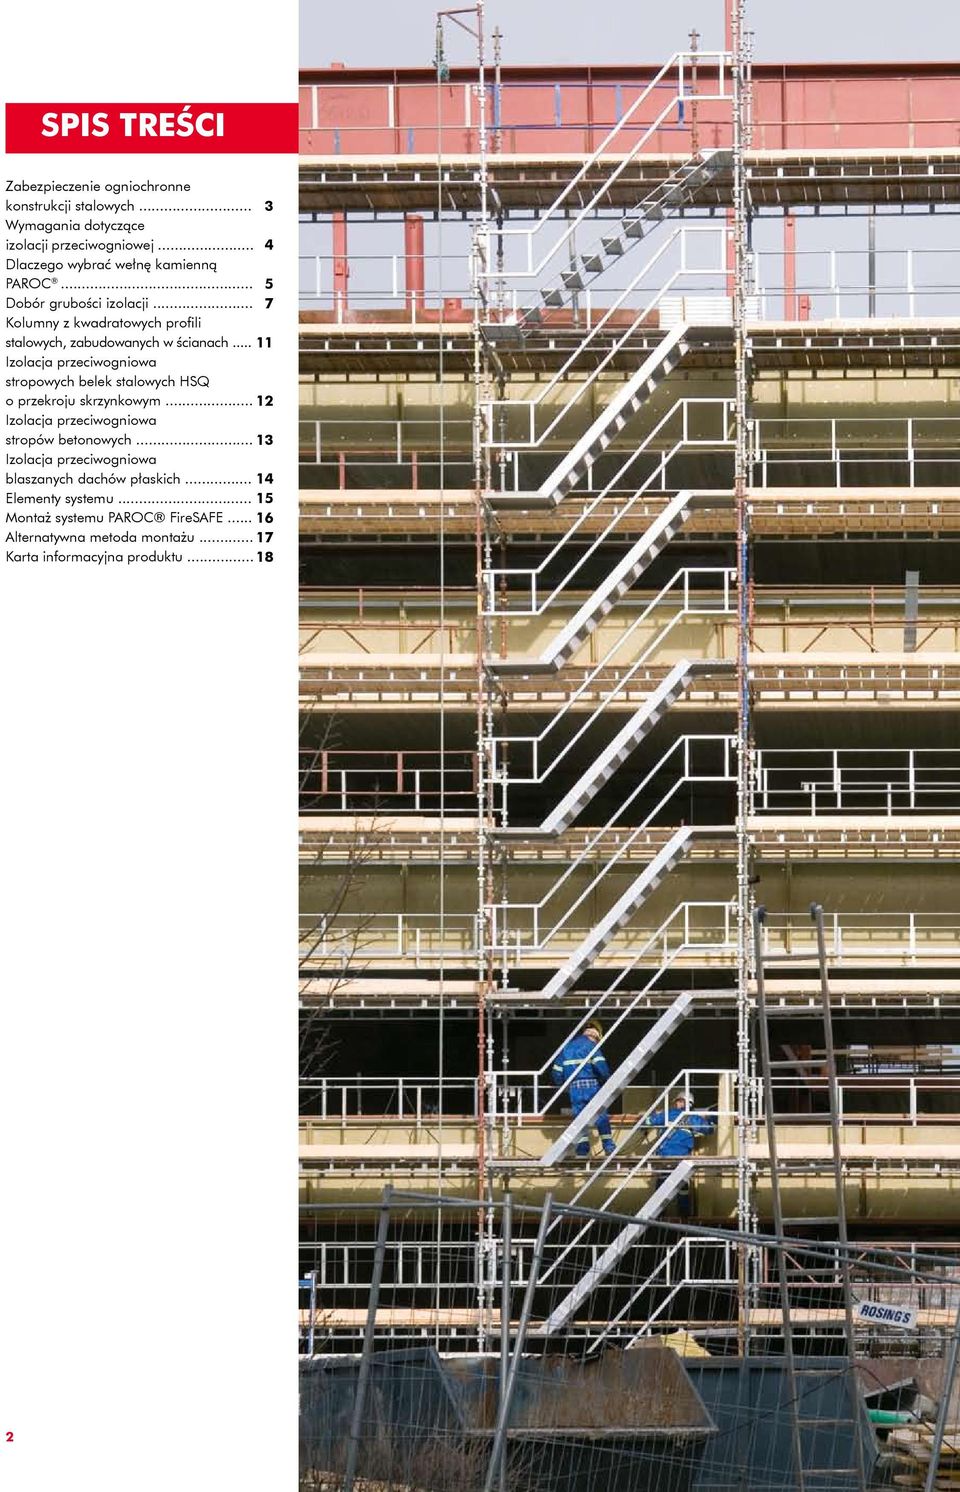 .. 11 Izolacja przeciwogniowa stropowych belek stalowych HSQ o przekroju skrzynkowym... 12 Izolacja przeciwogniowa stropów betonowych.